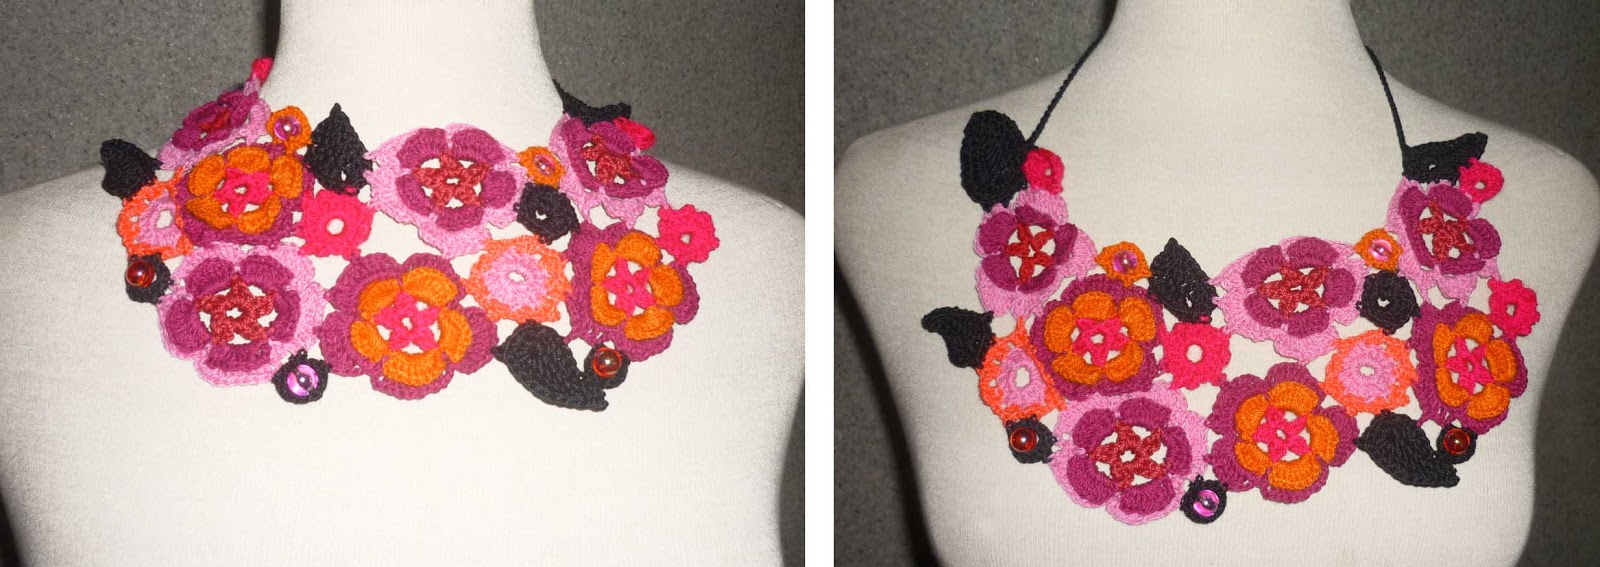 Tejidos Carmesí: Collar tejido de flores tejidas a crochet en colores rosados, fucsia, negro y naranja, adornado con cuentas rosadas